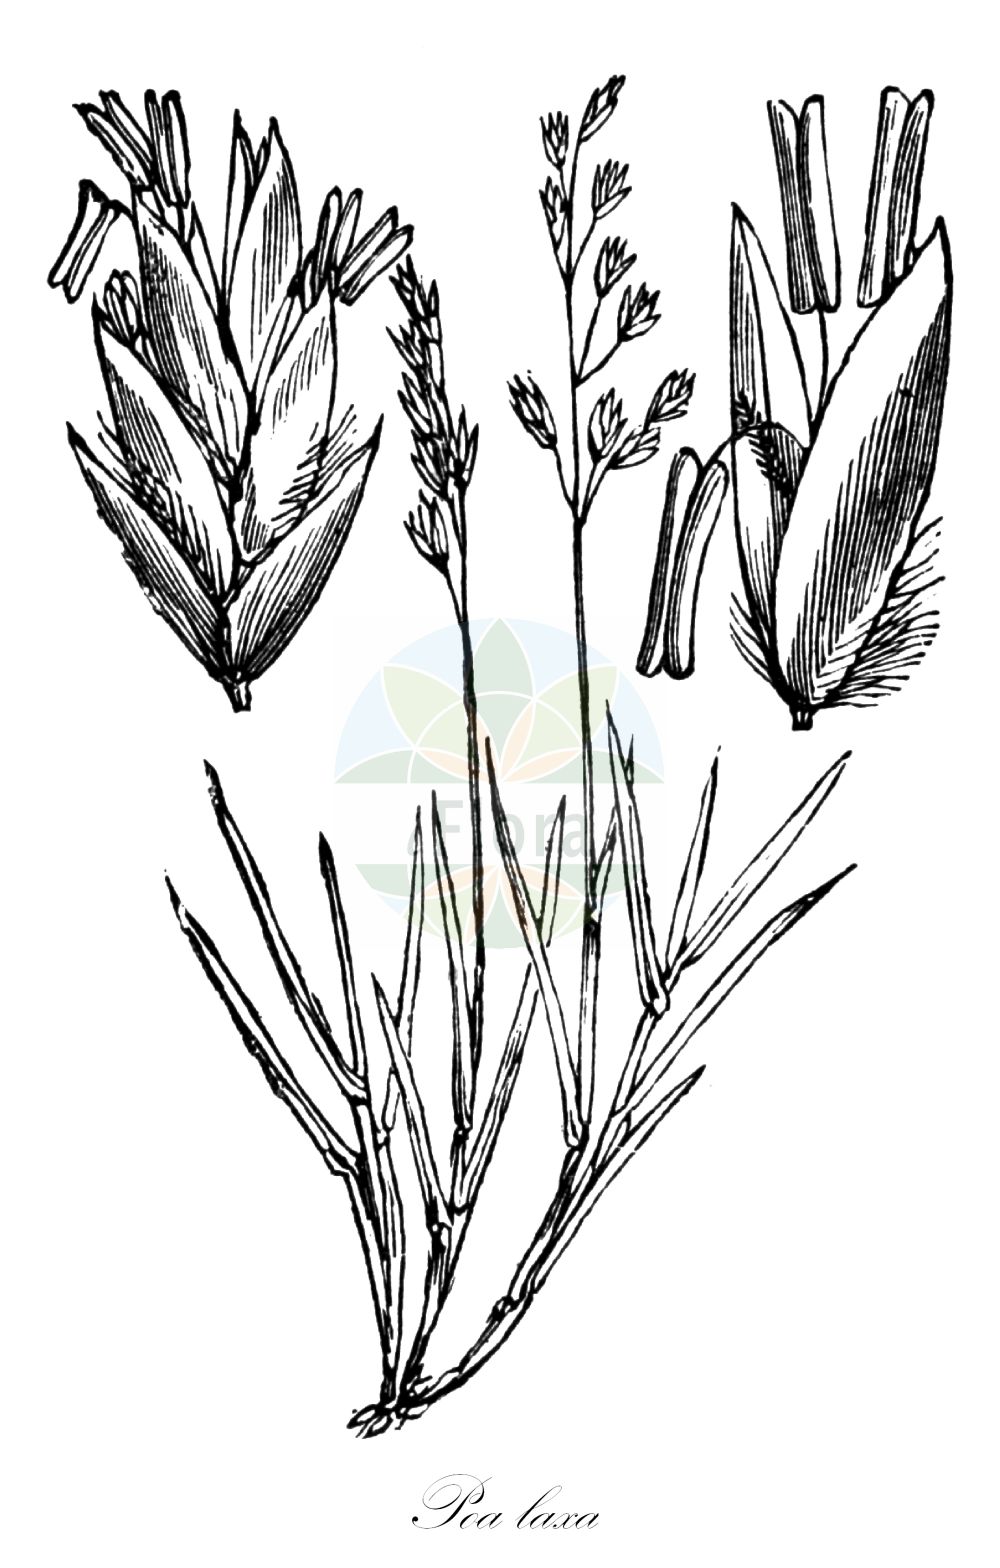 Historische Abbildung von Poa laxa (Schlaffes Rispengras - Wavy Meadow-grass). Das Bild zeigt Blatt, Bluete, Frucht und Same. ---- Historical Drawing of Poa laxa (Schlaffes Rispengras - Wavy Meadow-grass). The image is showing leaf, flower, fruit and seed.(Poa laxa,Schlaffes Rispengras,Wavy Meadow-grass,Poa tremula,Poa laxa,Schlaffes Rispengras,Wavy Meadow-grass,Mt. Washington Bluegrass,Poa,Rispengras,Bluegrass,Poaceae,Süßgräser,Grass family,Blatt,Bluete,Frucht,Same,leaf,flower,fruit,seed,Fitch et al. (1880))